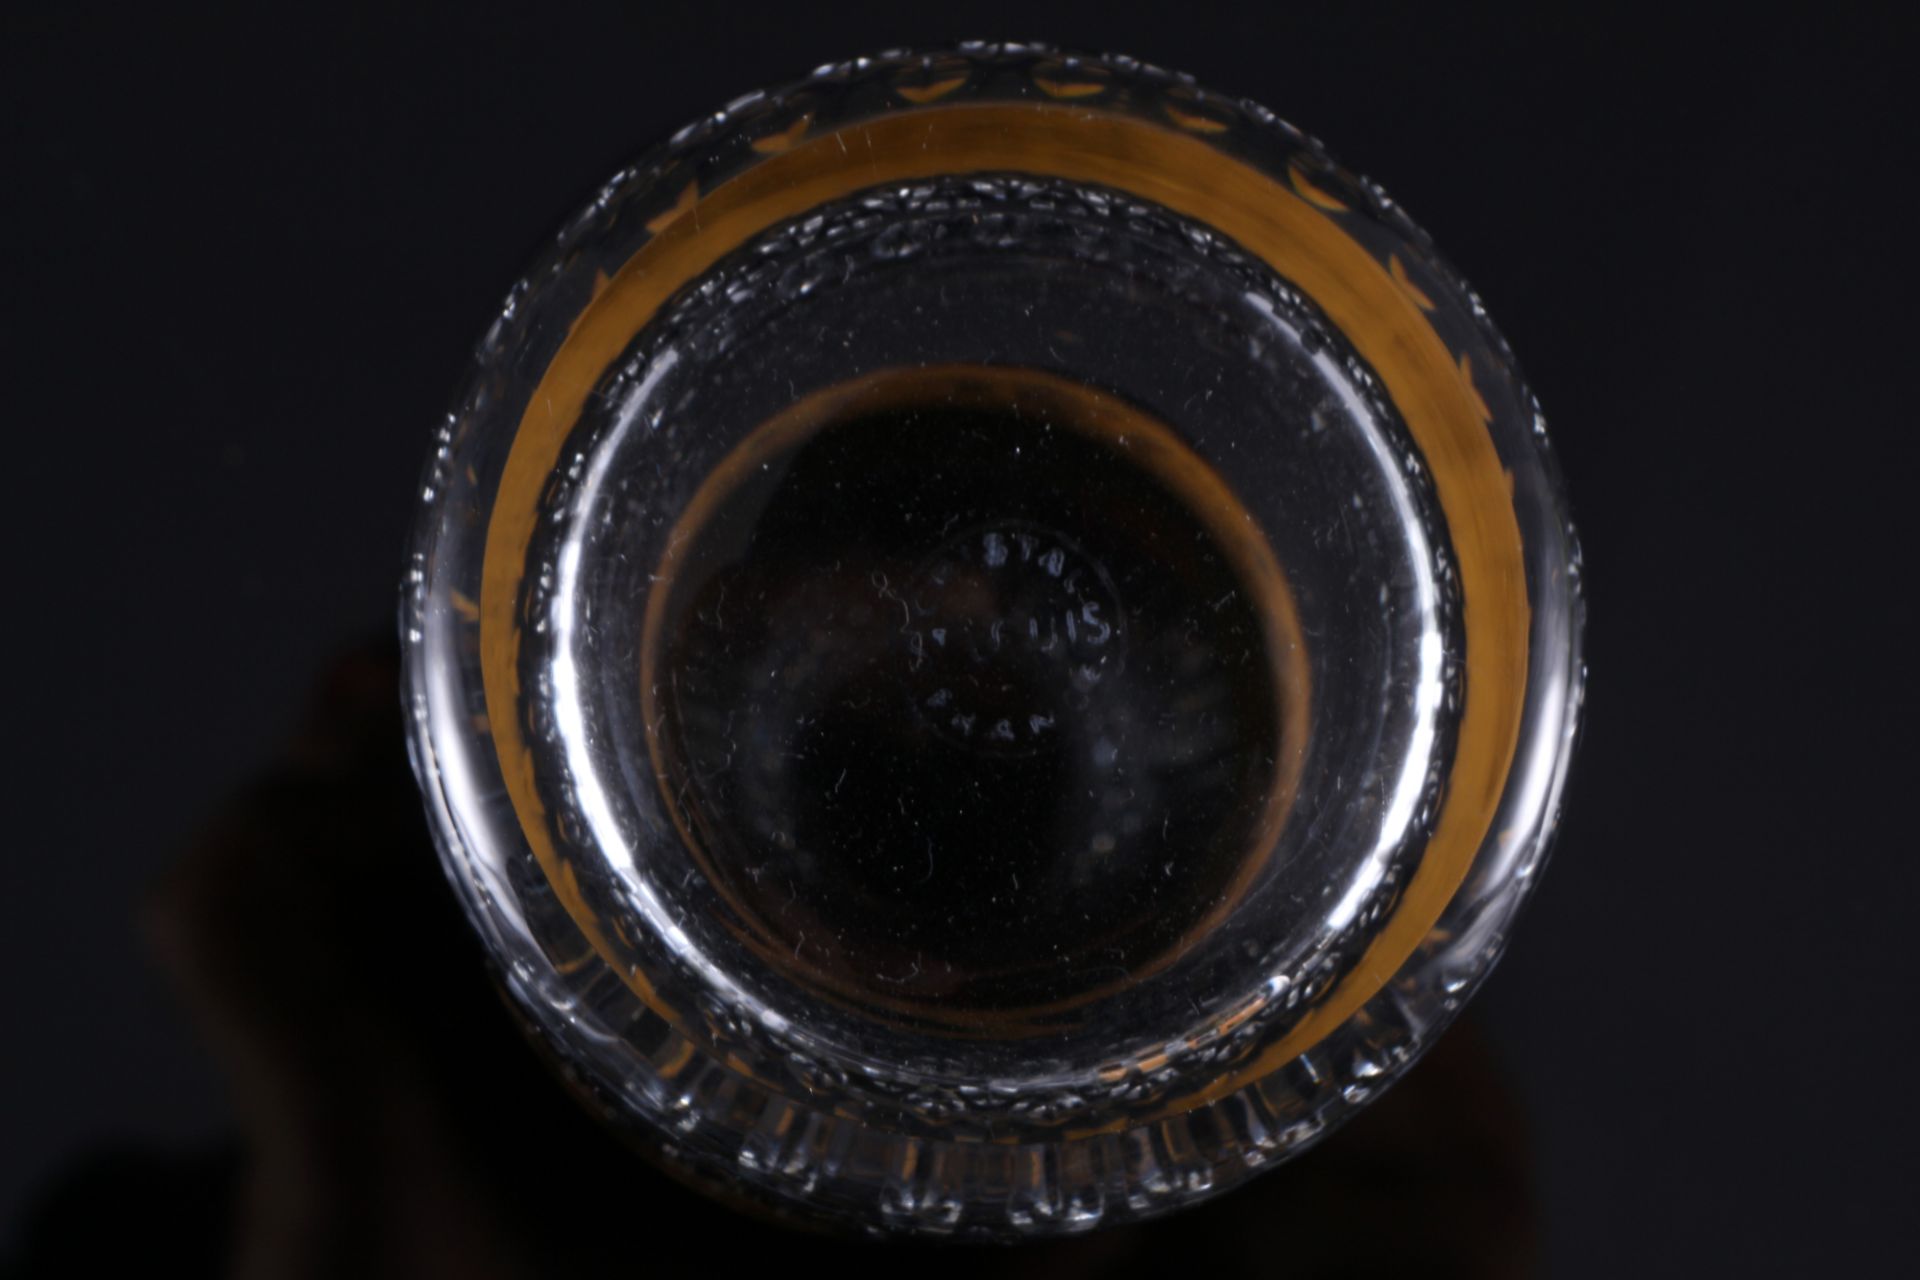 St. Louis Thistle Gold 6 highball glasses, Bechergläser, - Image 3 of 3